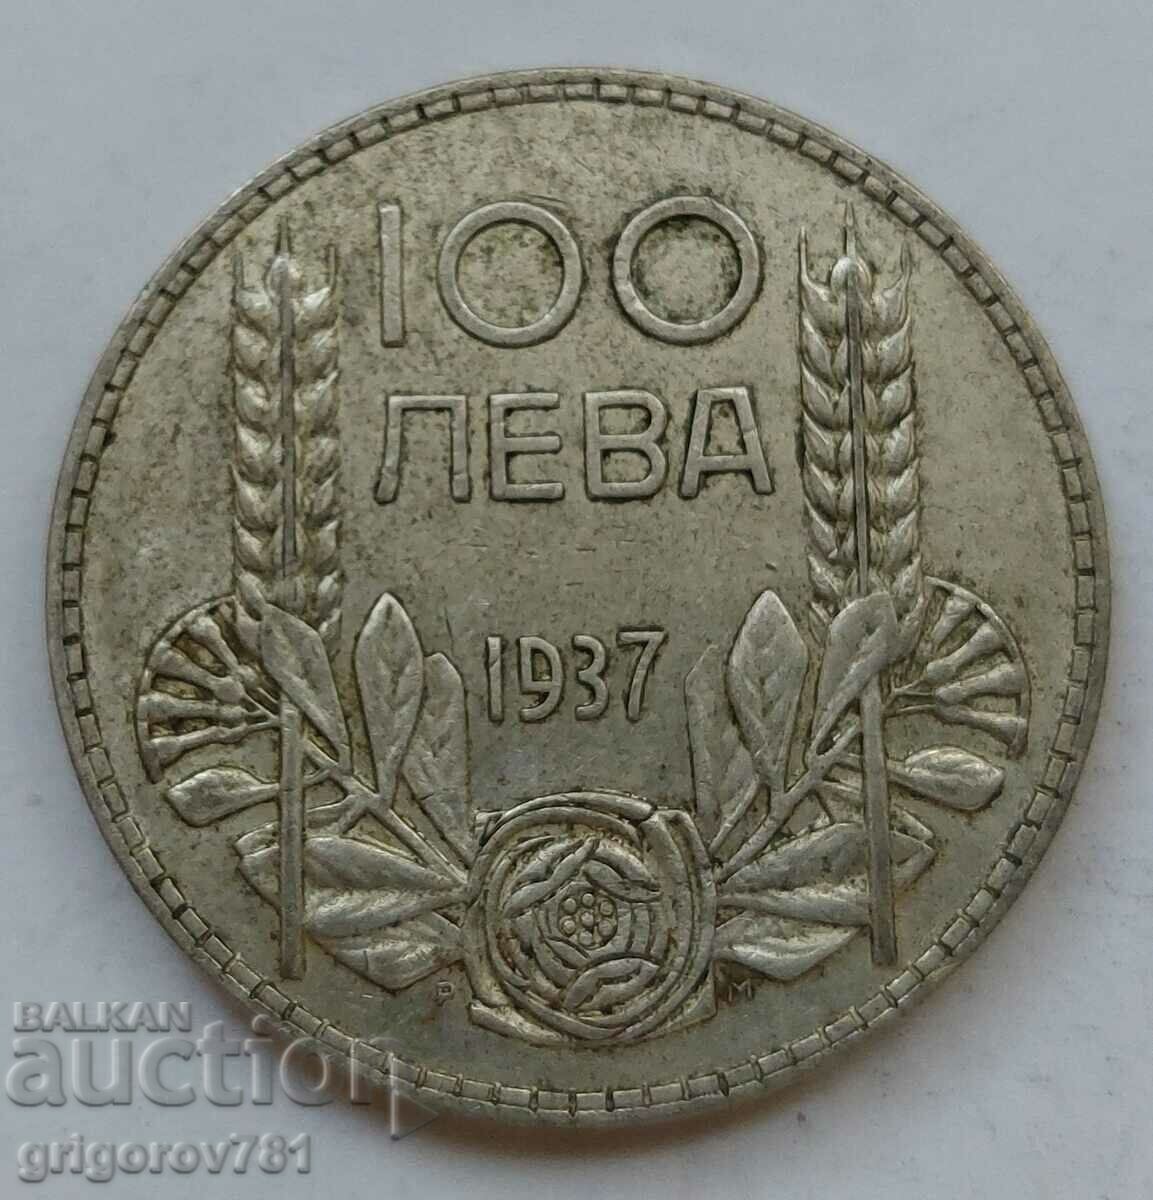 Ασήμι 100 λέβα Βουλγαρία 1937 - ασημένιο νόμισμα #151